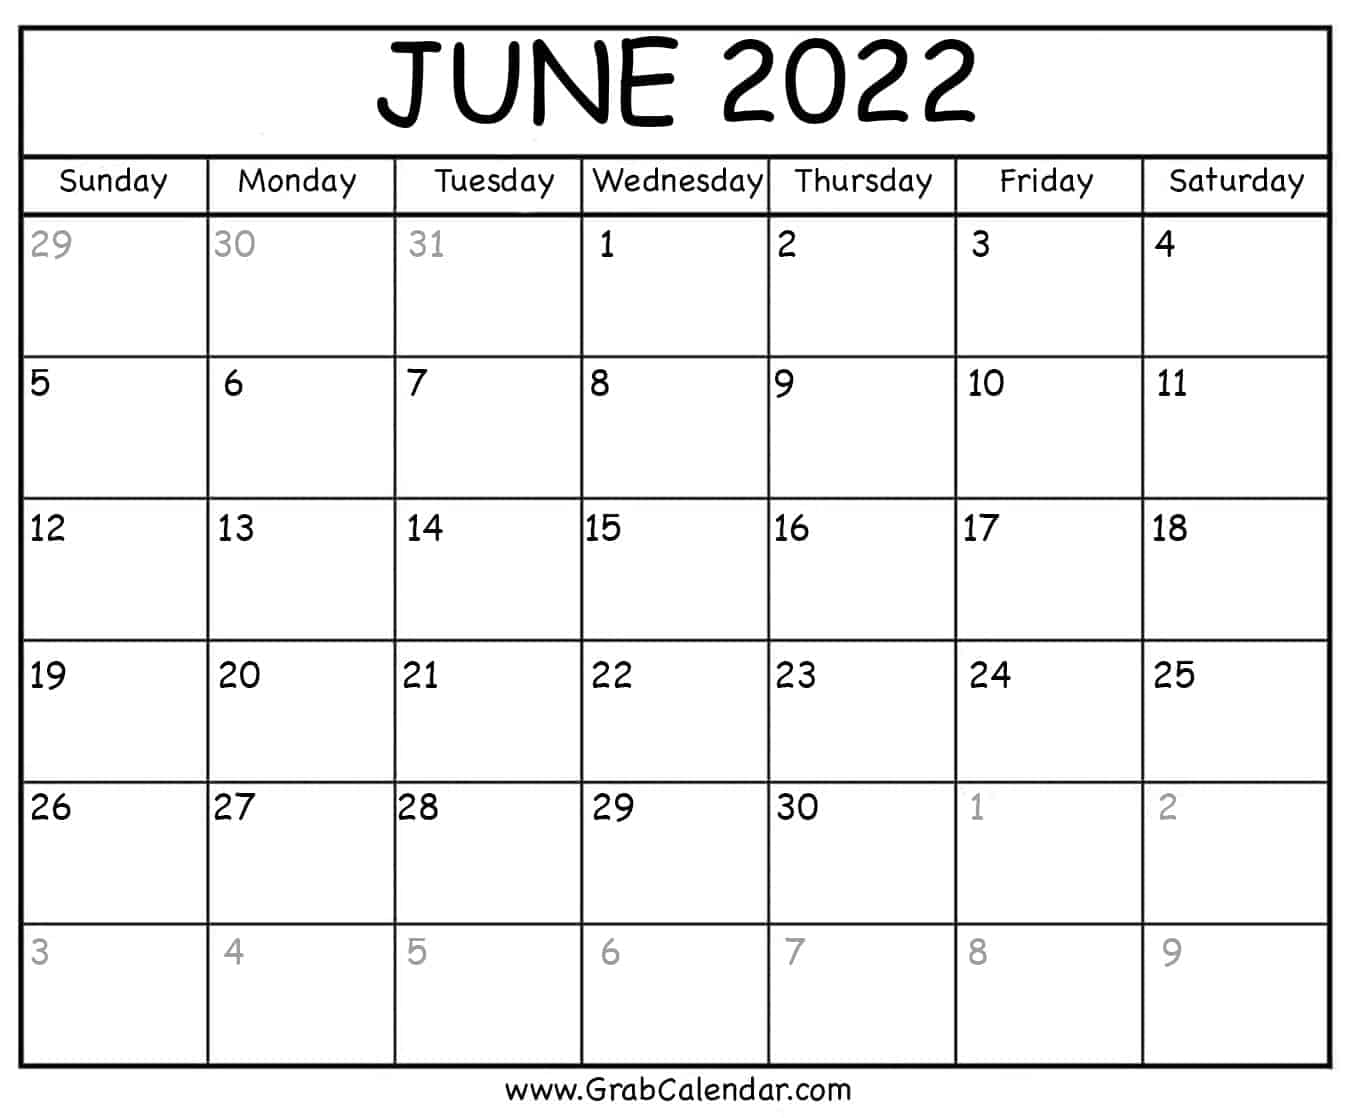 June 2022 Calendar Printable June 2022 Calendar